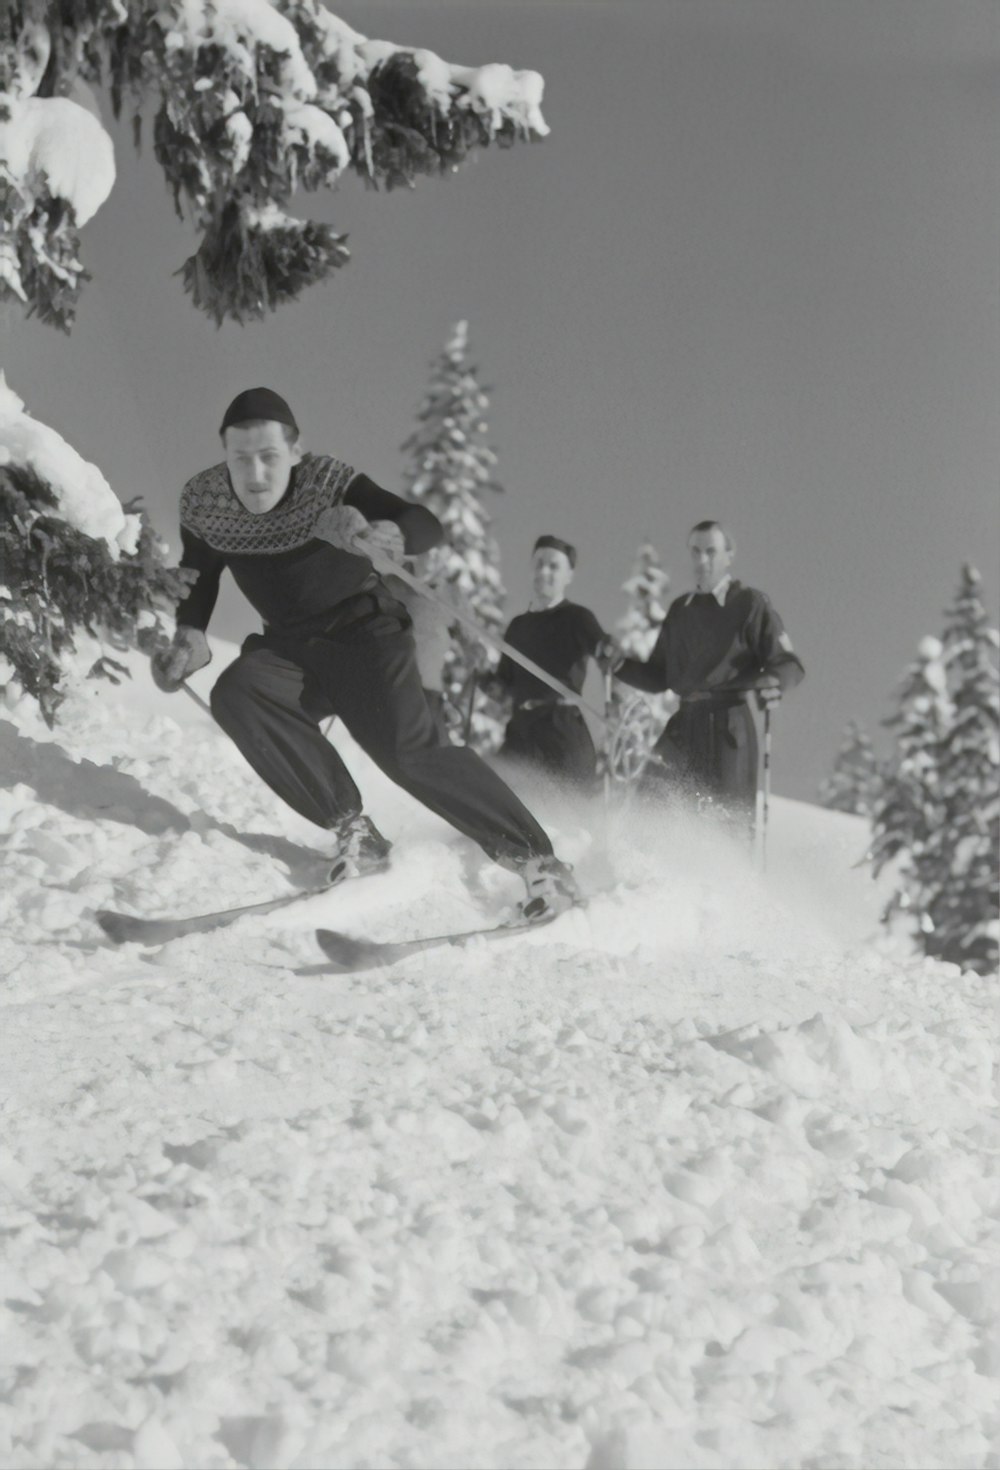 Fotografía en escala de grises de personas practicando esquí nórdico